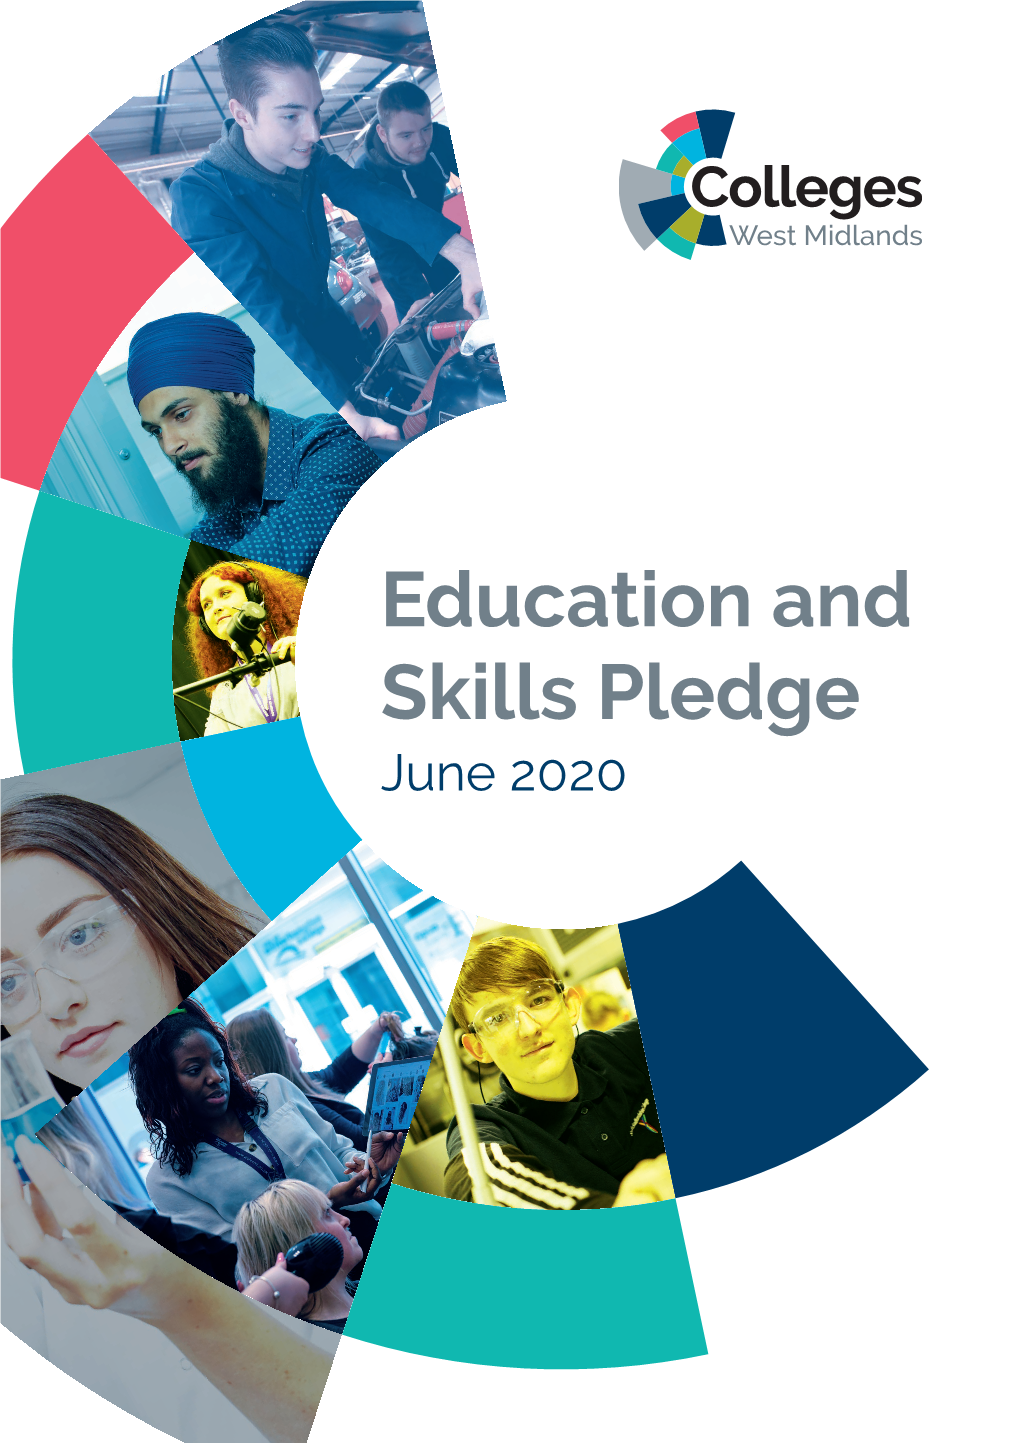 Education and Skills Pledge June 2020